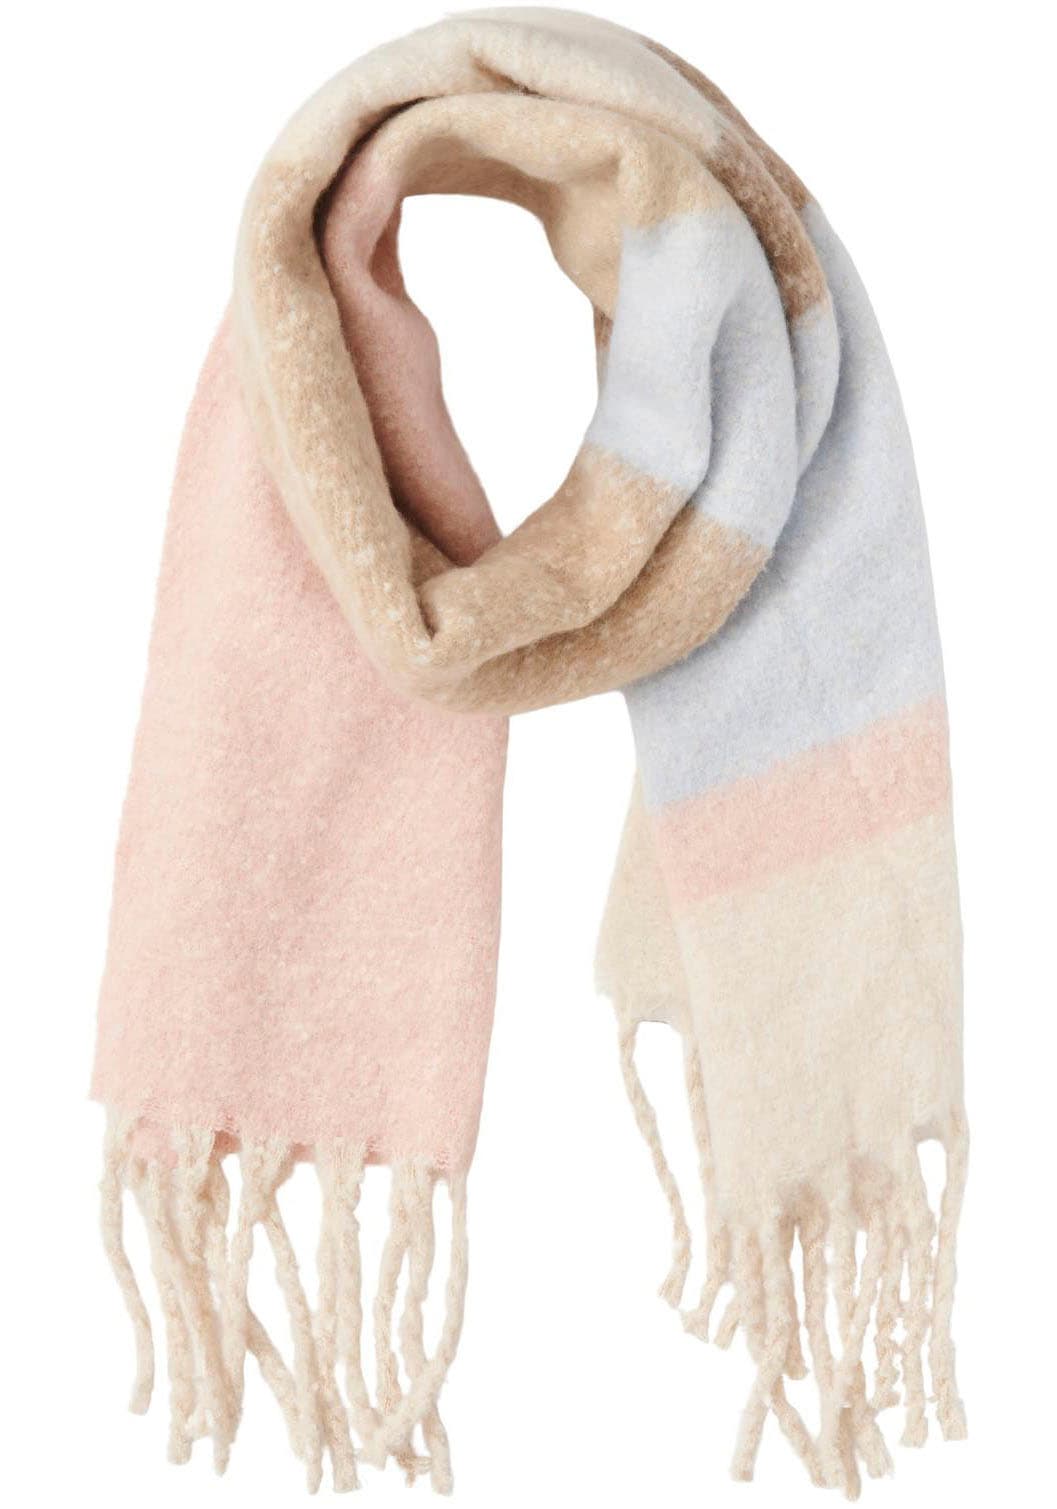 Schals online kaufen | Tücher für Jahreszeit jede auf